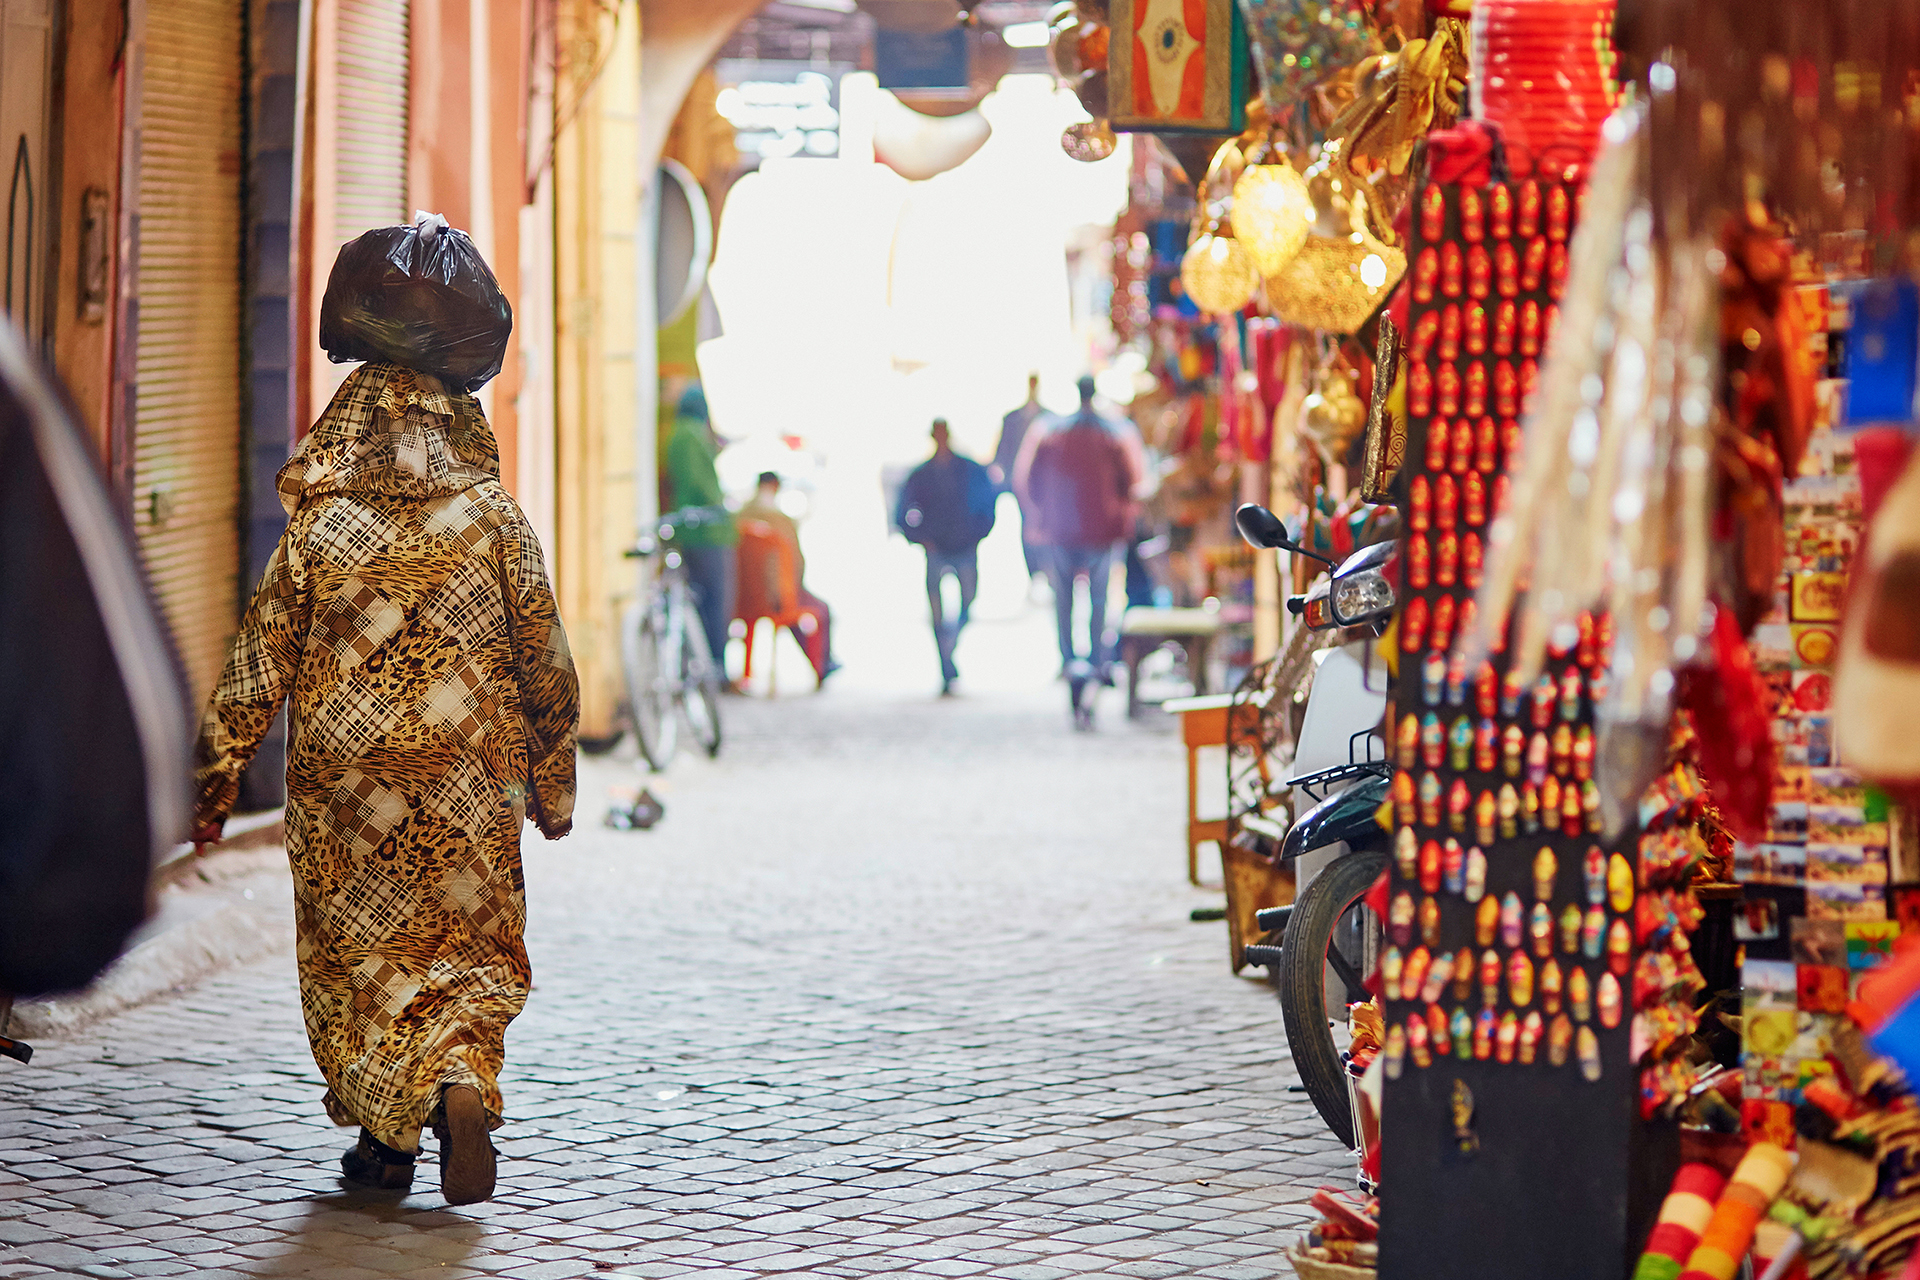 توقع عدد قياسي للسياح في المغرب هذا العام | اقتصاد – البوكس نيوز